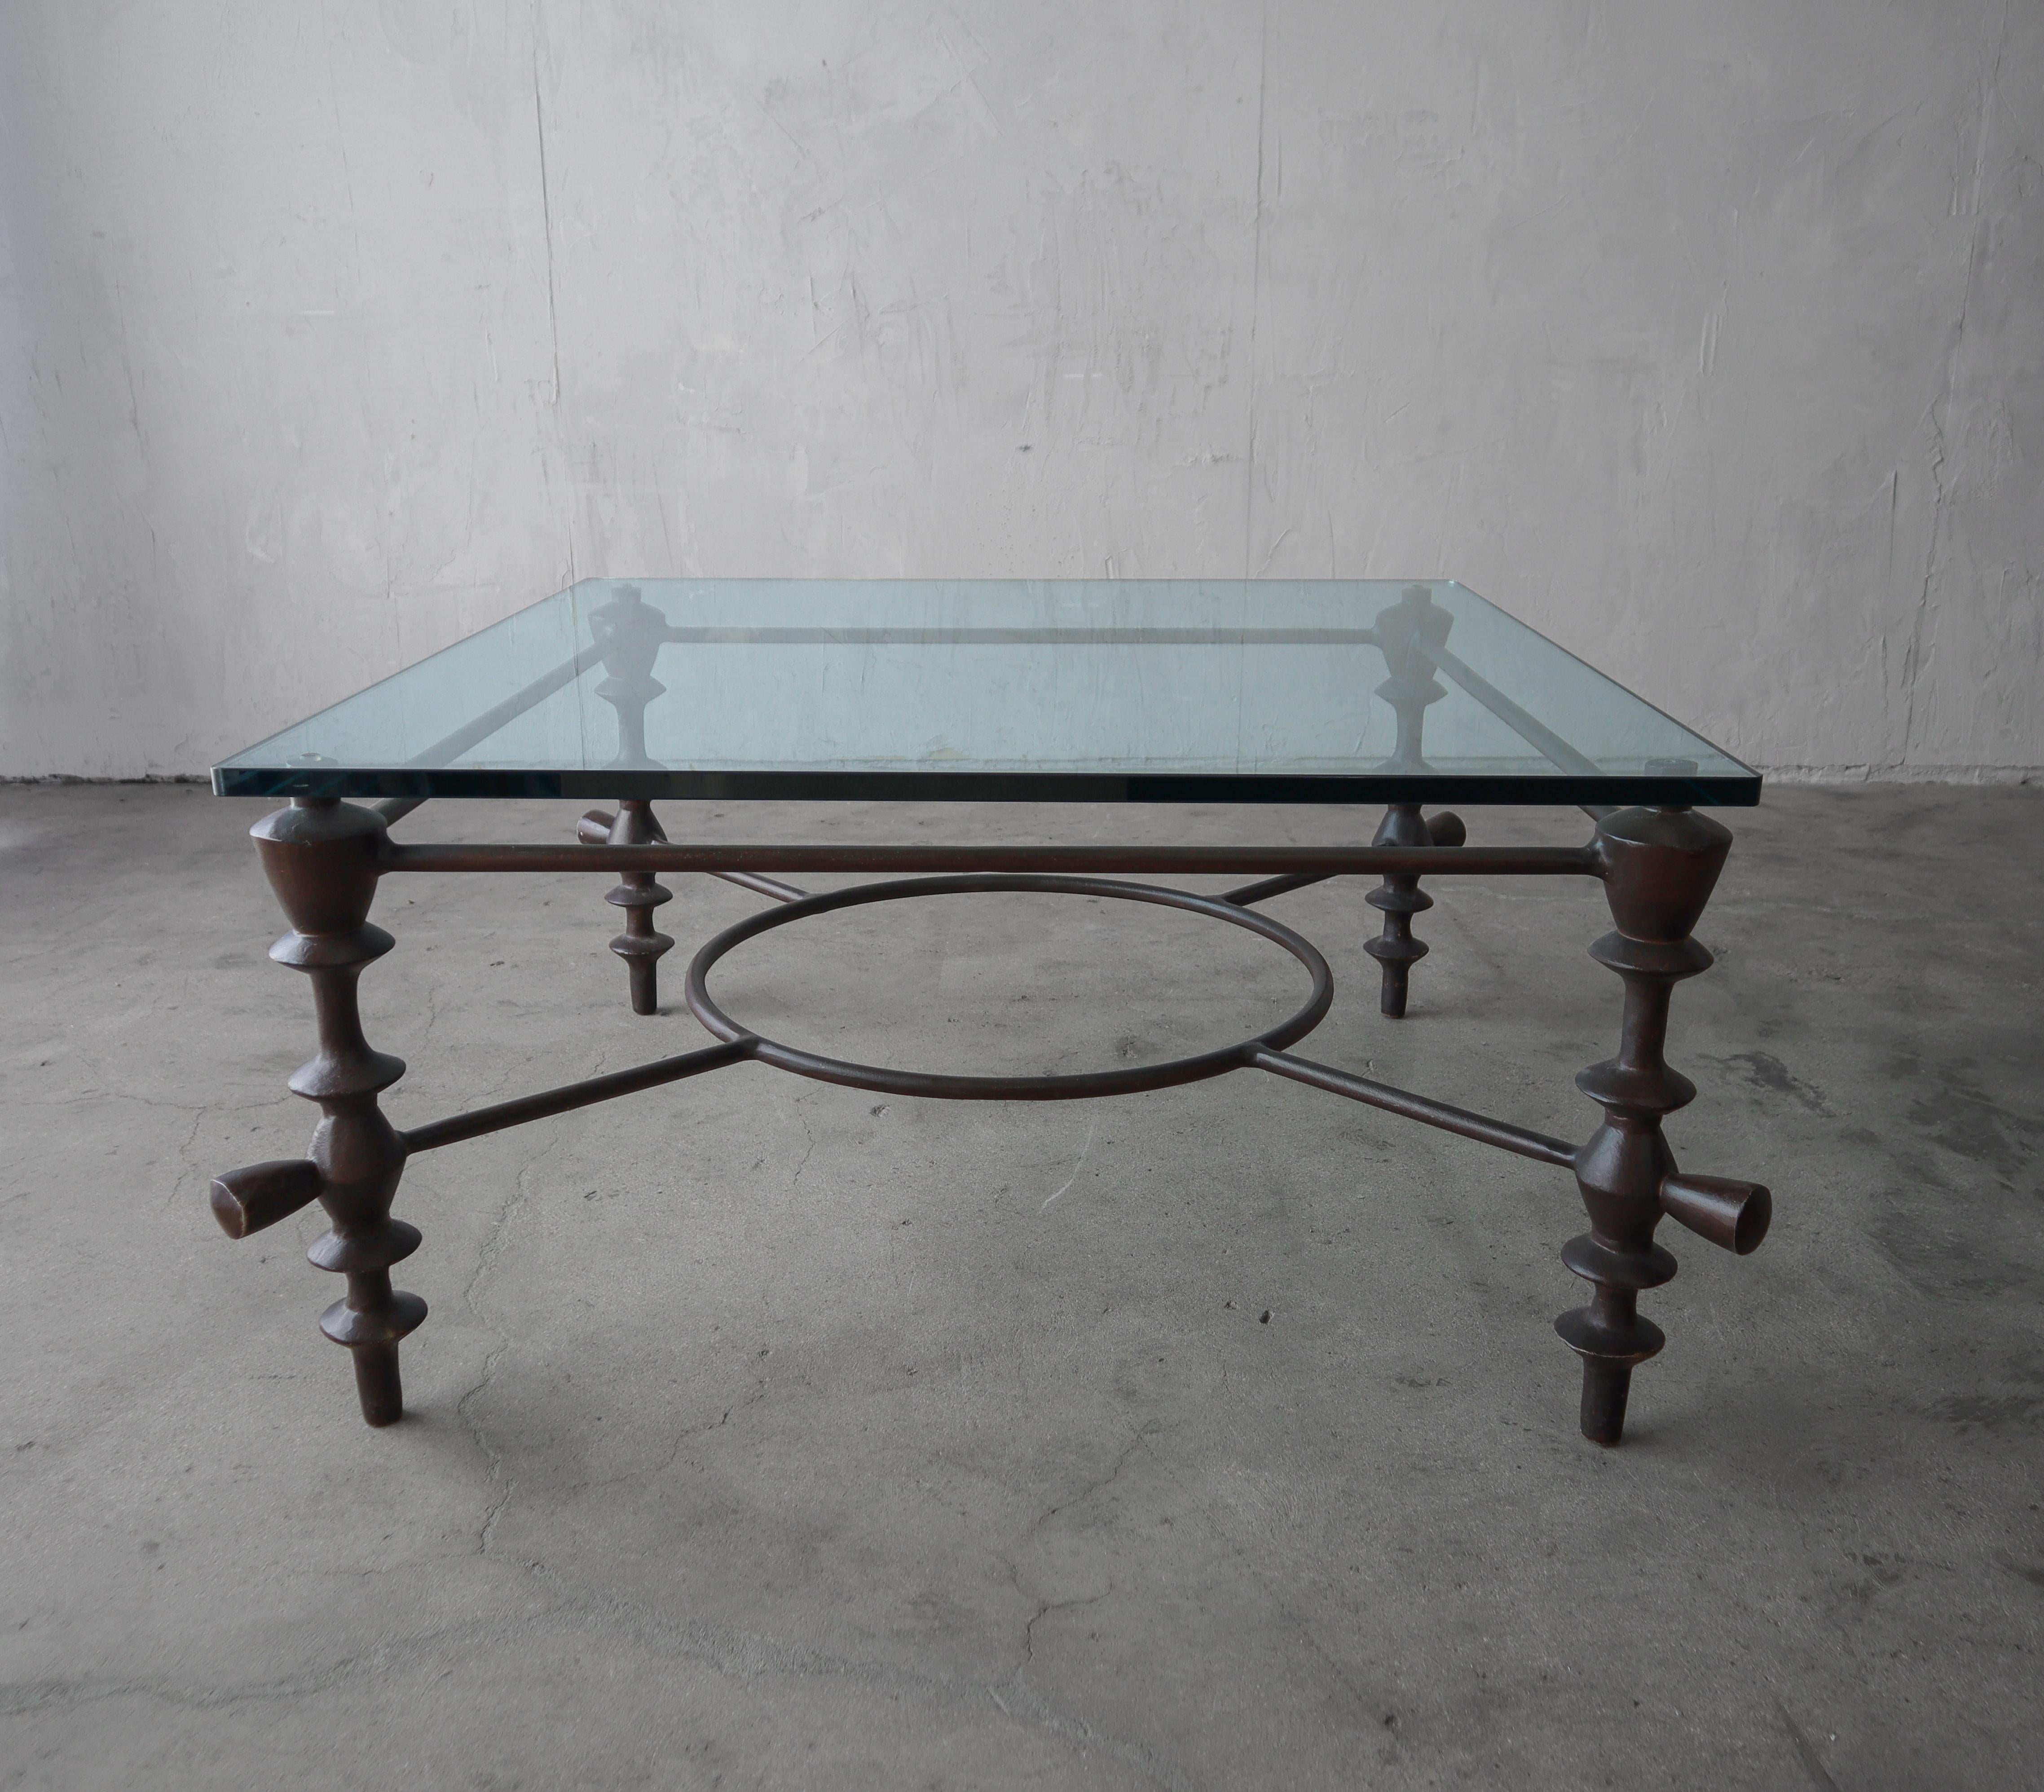 Substantielle et magnifique table basse sculpturale dans le style de Diego Giacometti. La base de la table est en aluminium moulé avec une finition bronze et un magnifique plateau en verre.
 
 Un design très propre et minimal, parfait pour de